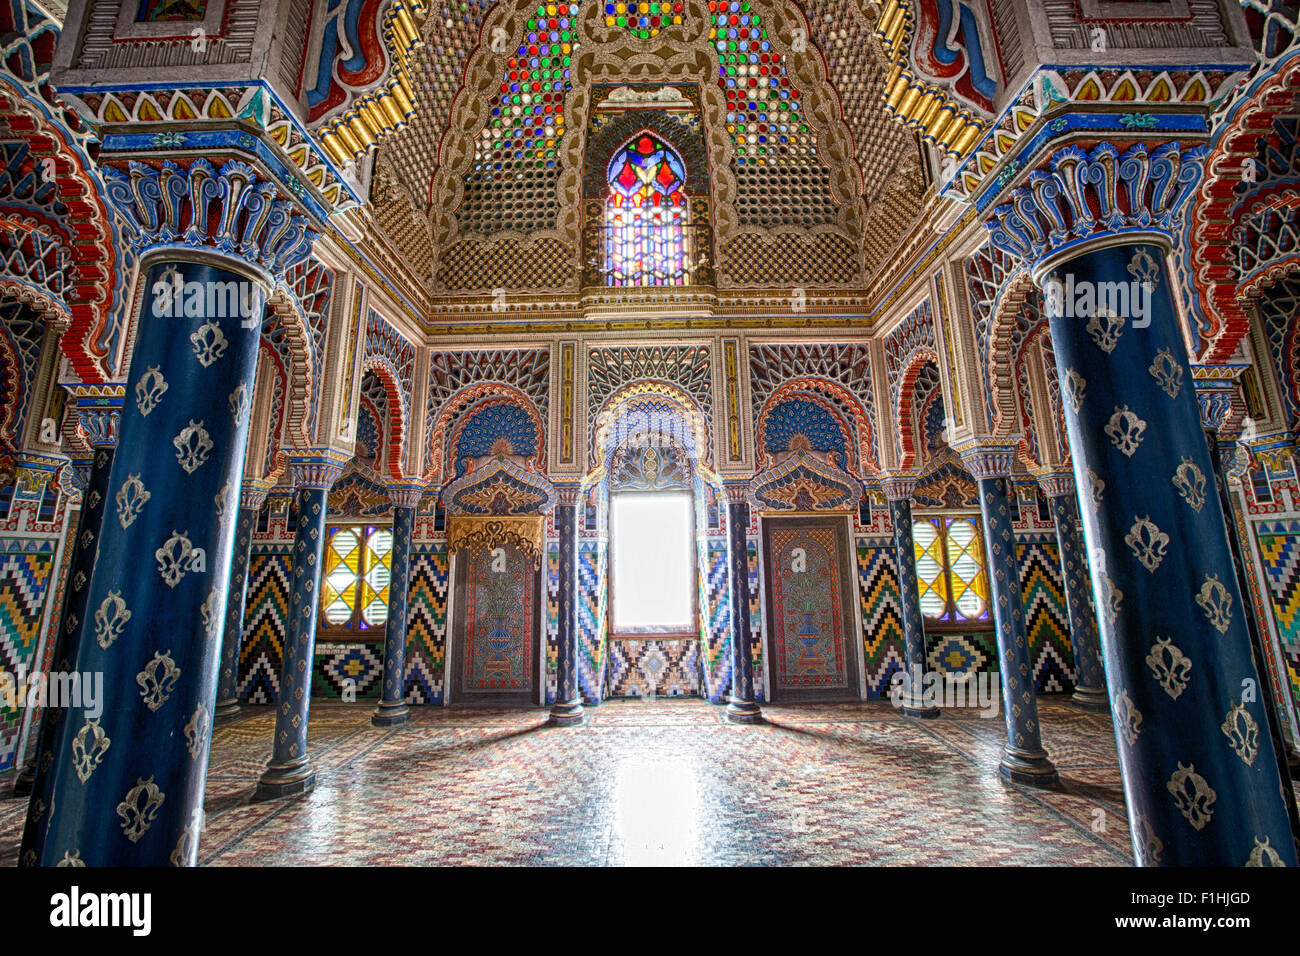 Palacio de estilo morisco interior detalles de la arquitectura de cuento de hadas árabe Foto de stock